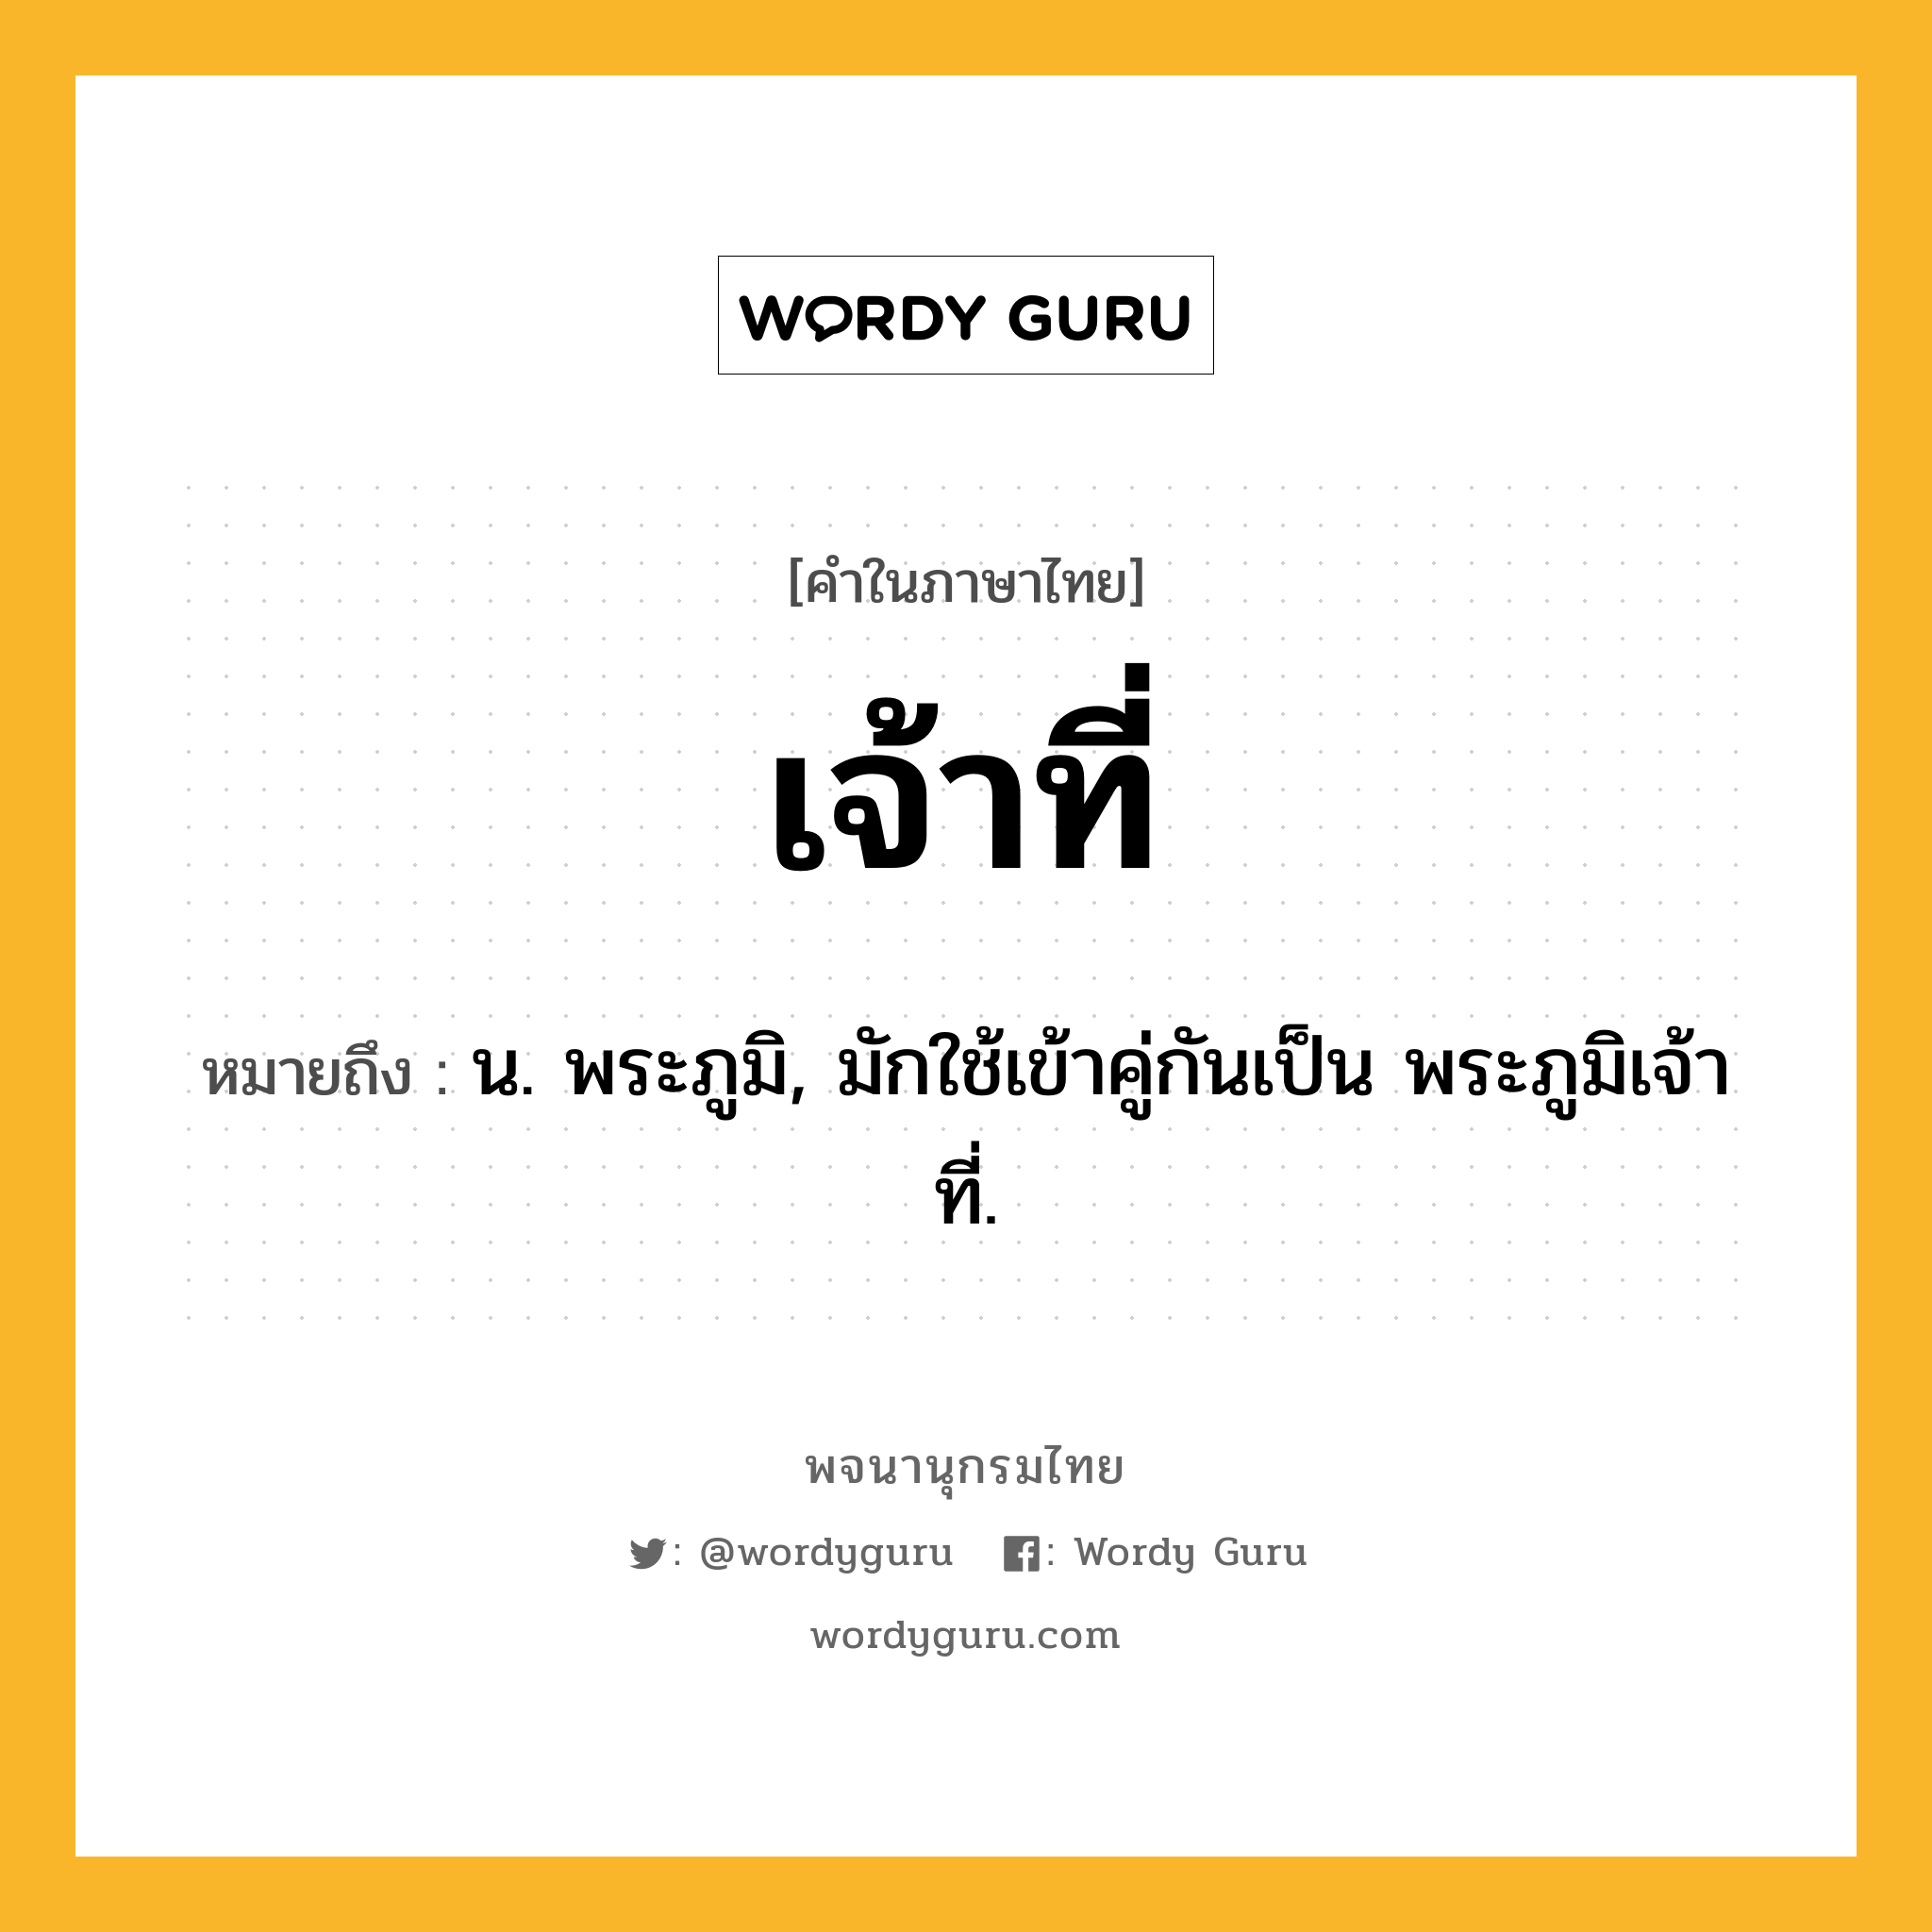 เจ้าที่ ความหมาย หมายถึงอะไร?, คำในภาษาไทย เจ้าที่ หมายถึง น. พระภูมิ, มักใช้เข้าคู่กันเป็น พระภูมิเจ้าที่.